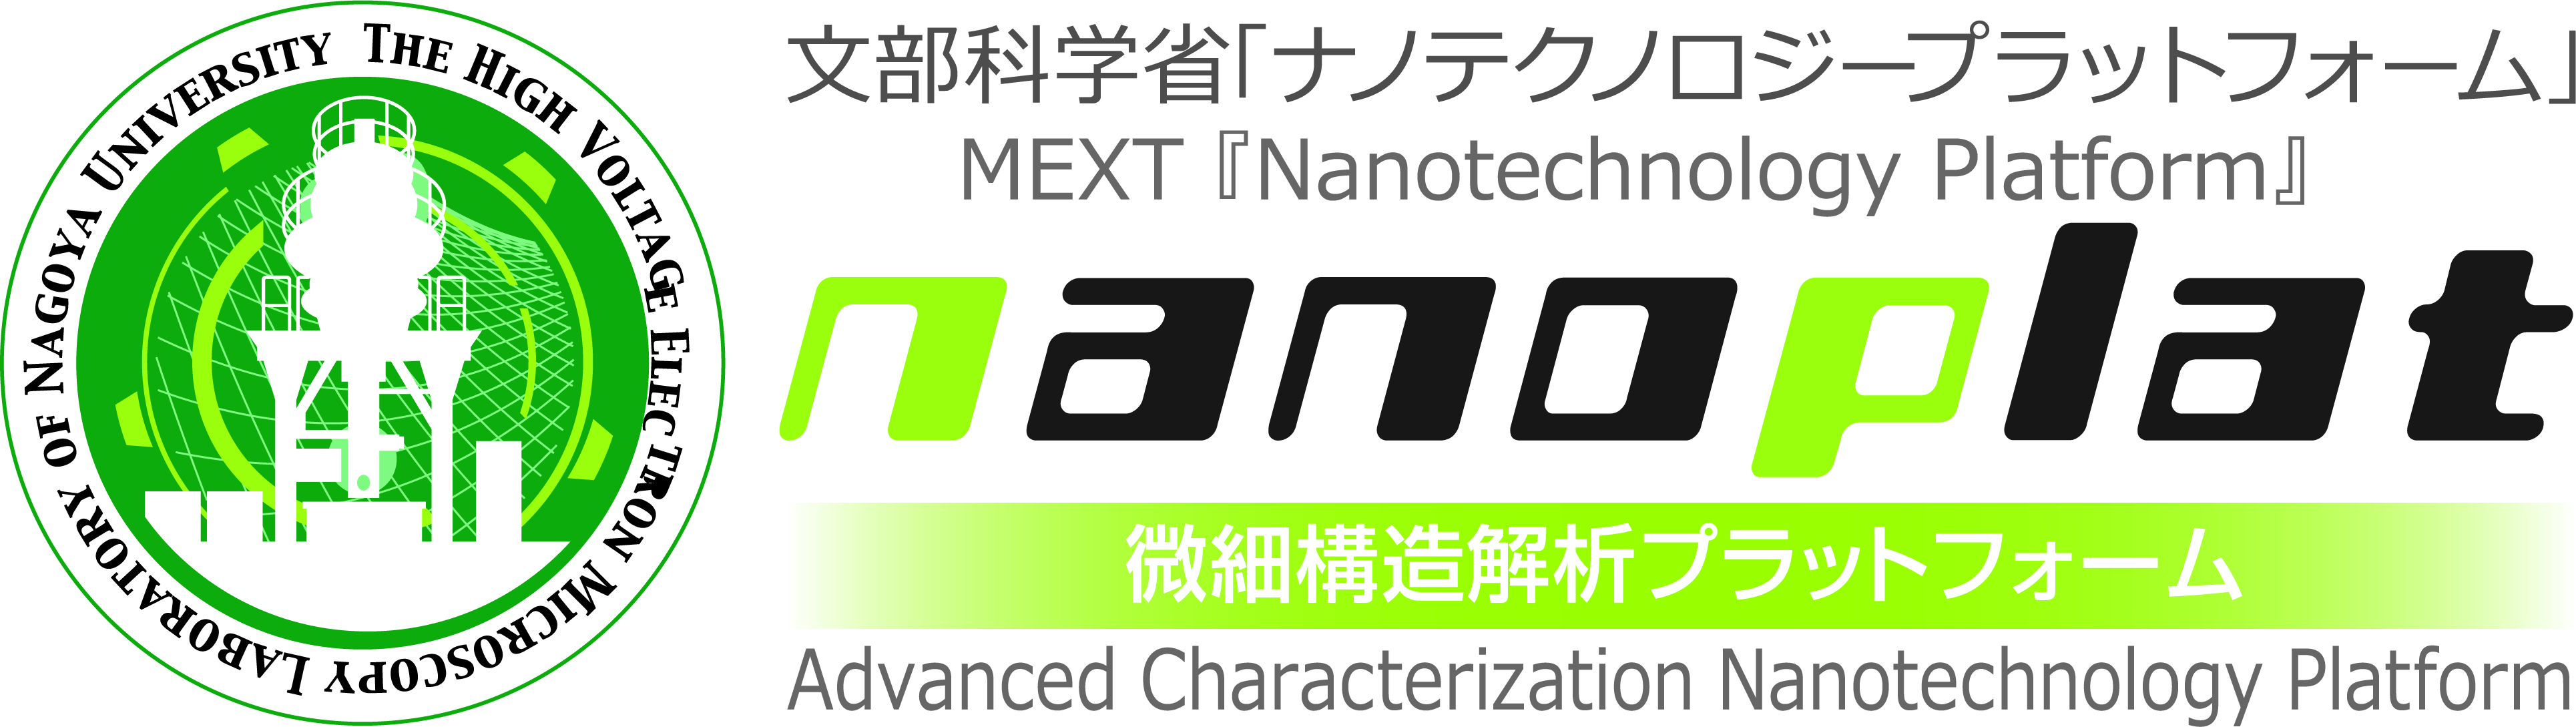 Advanced Characterization Nanotechnology Platform by MEXT, NAGOYA UNIVERSITY HVEM Lab.